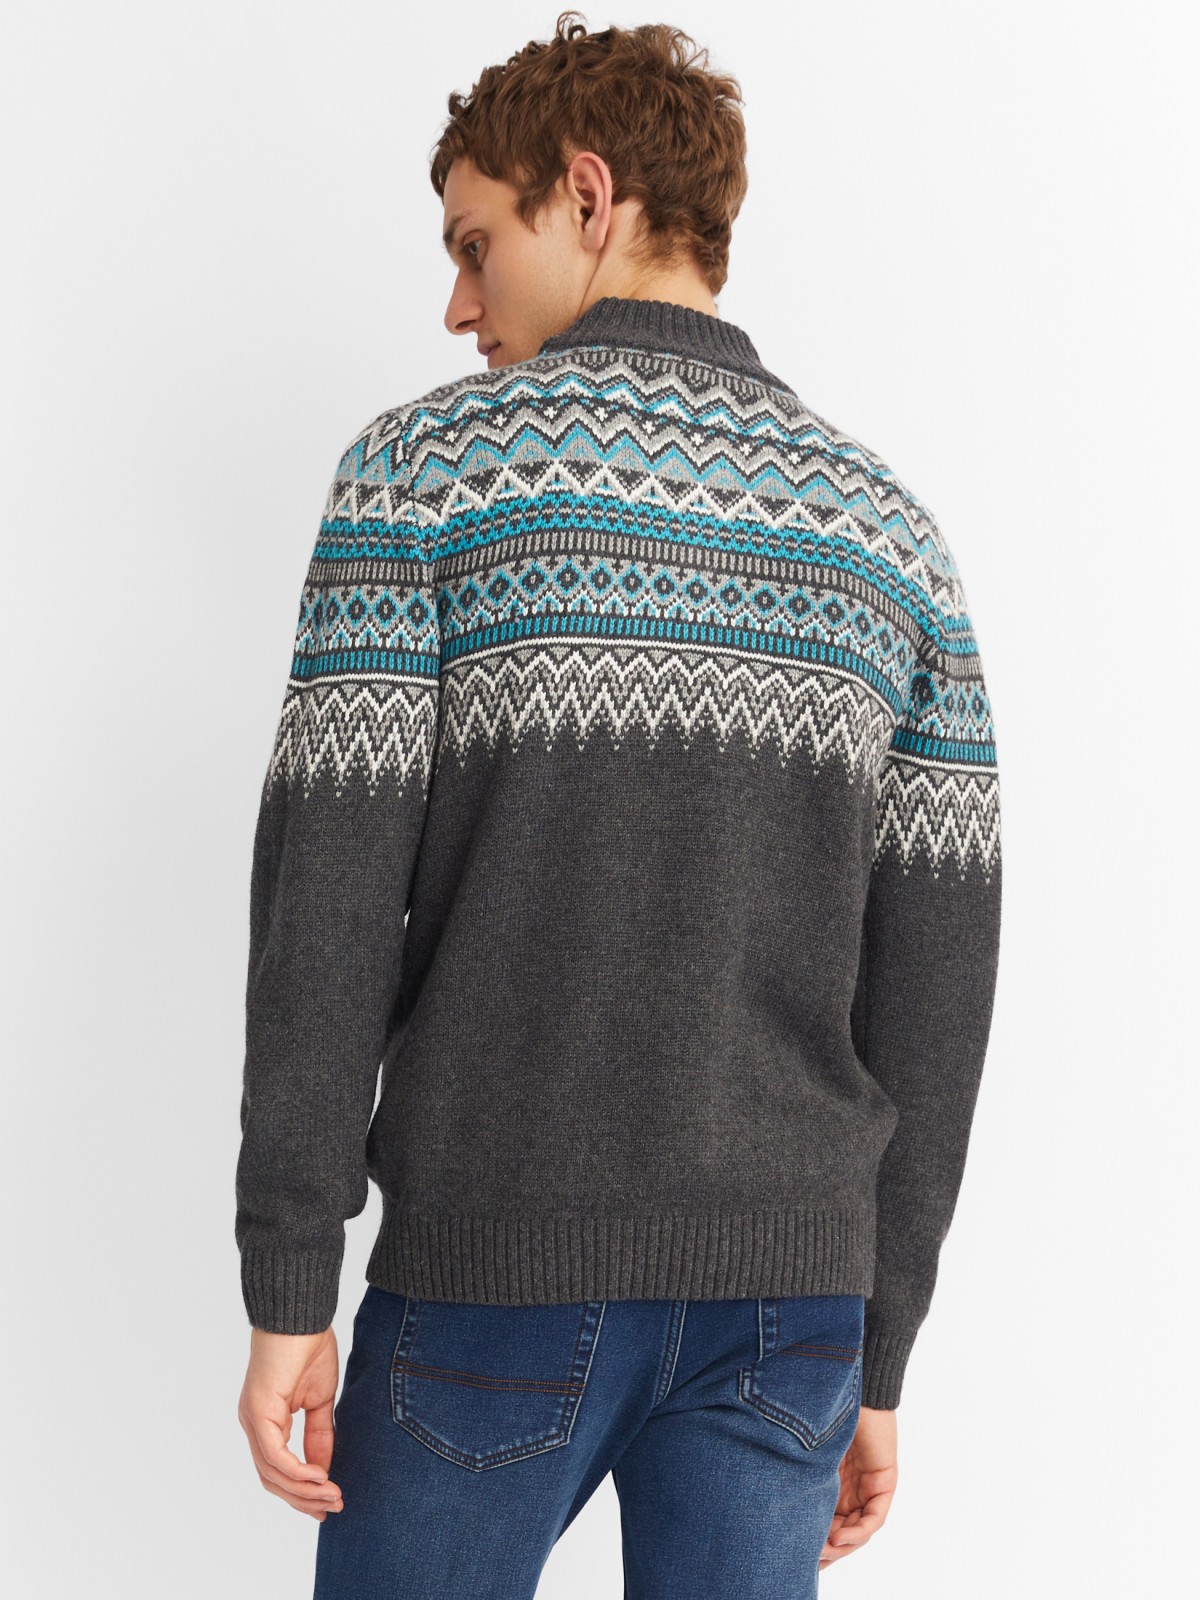 Вязаный шерстяной свитер с воротником на молнии и скандинавским узором